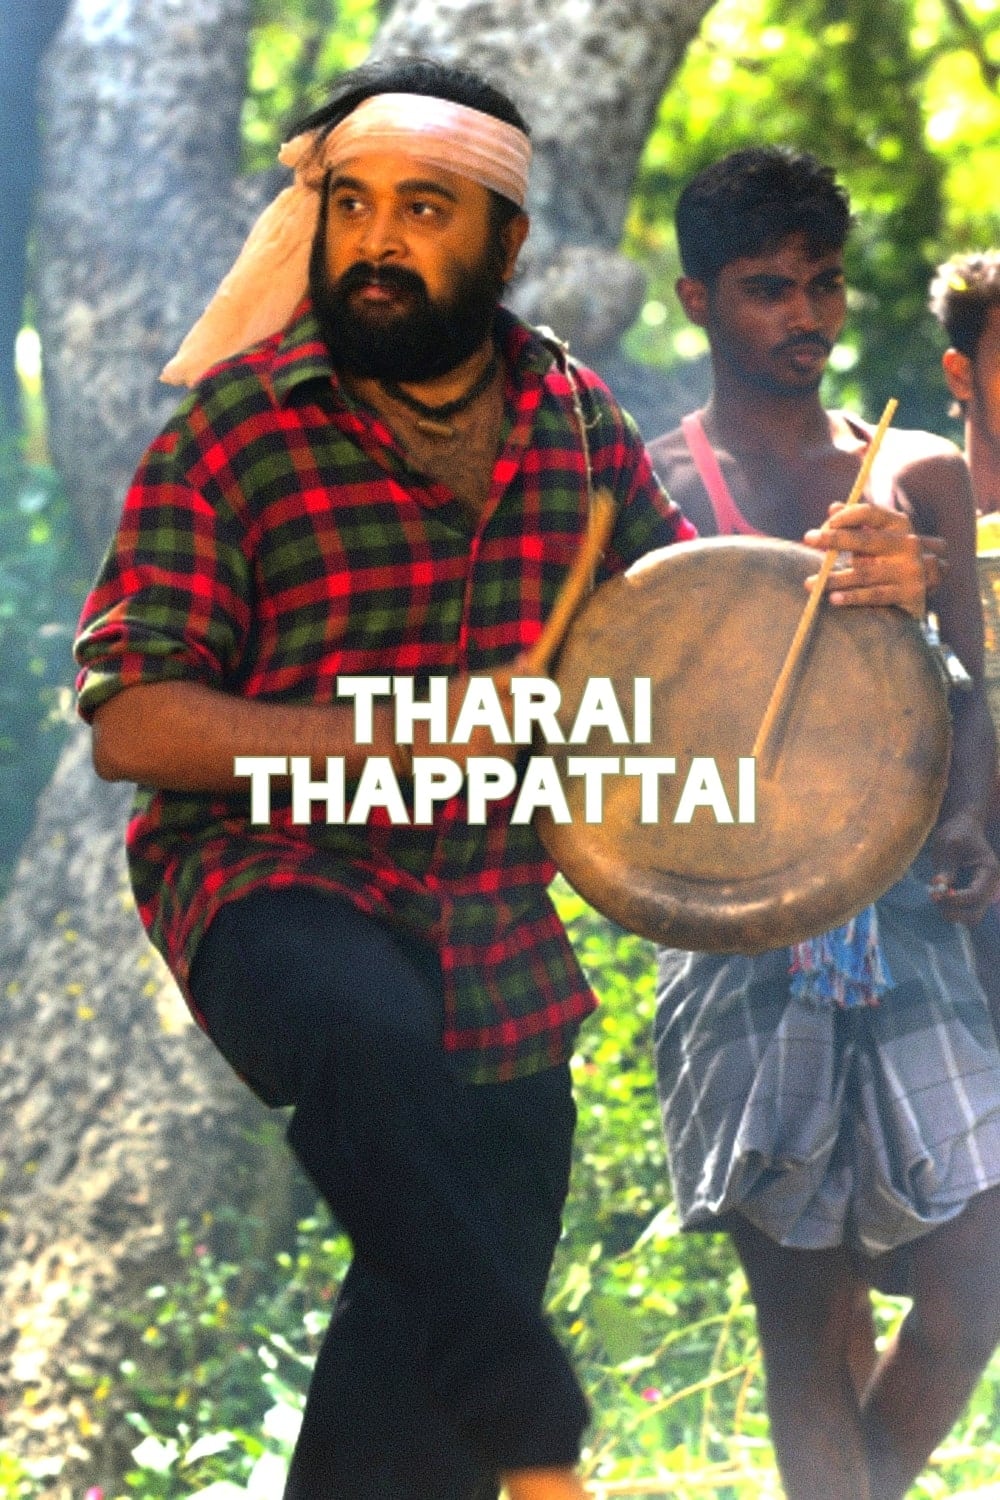 Tharai Thappattai